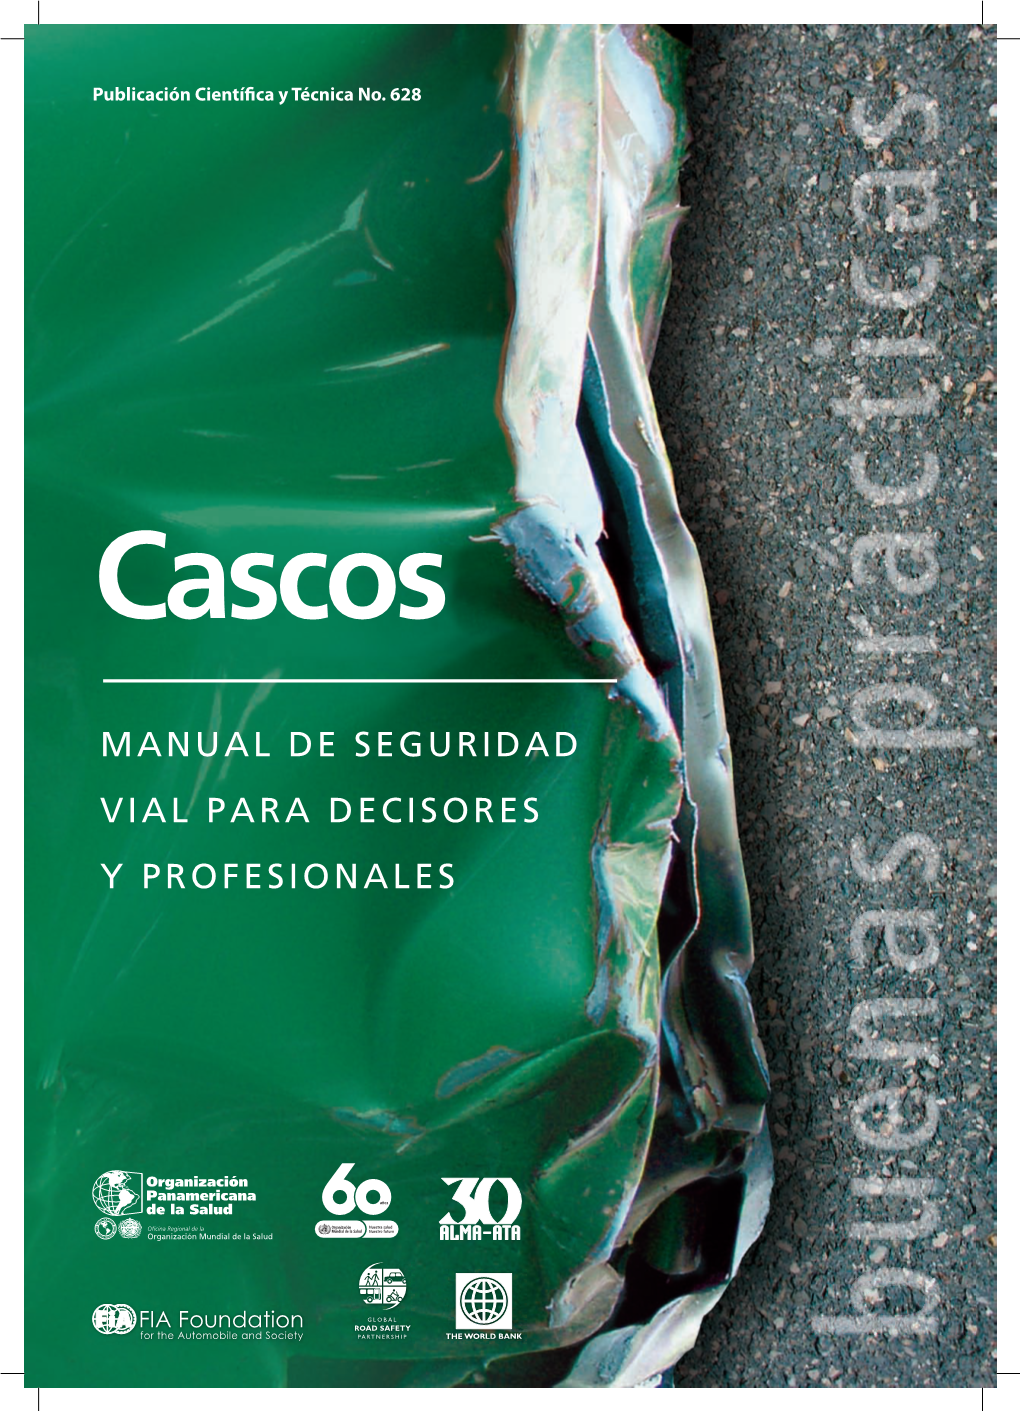 Cascos: Manual De Seguridad Vial Para Decisores Y Profesionales Washington, DC: OPS, © 2008